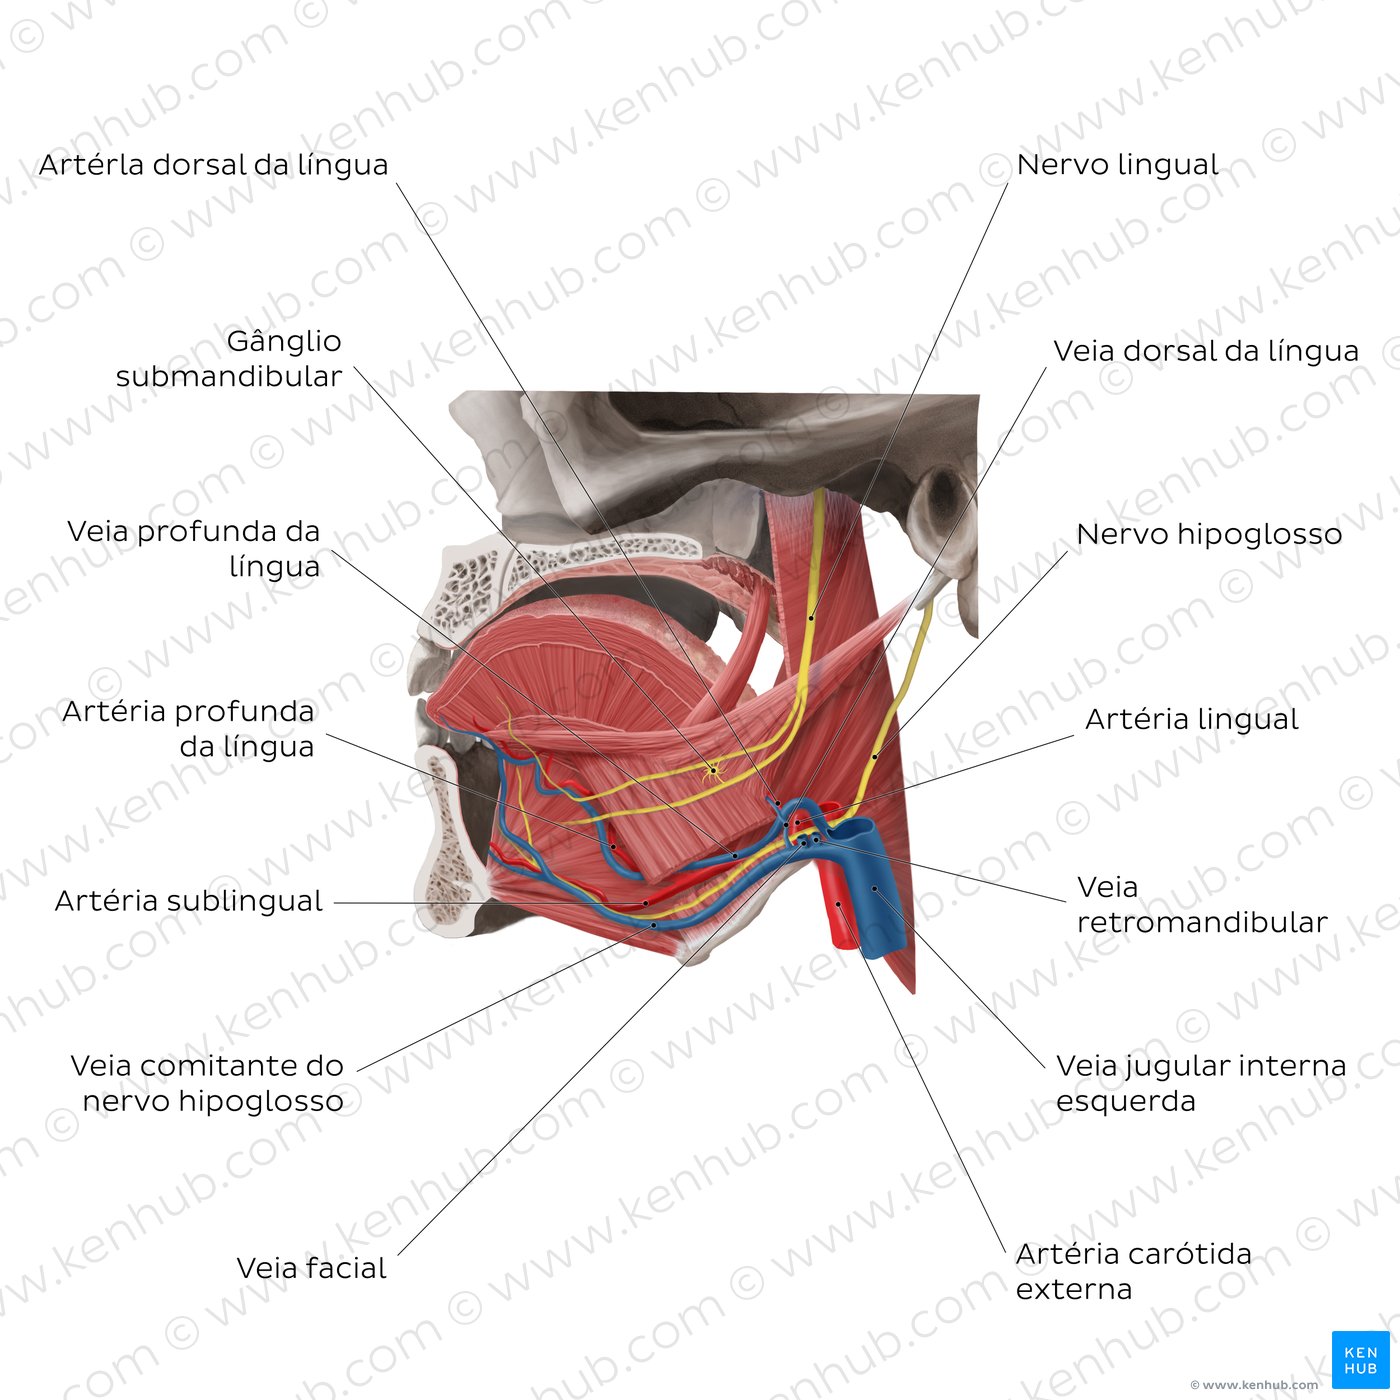 Inervação e vascularização da língua (vista lateral esquerda)